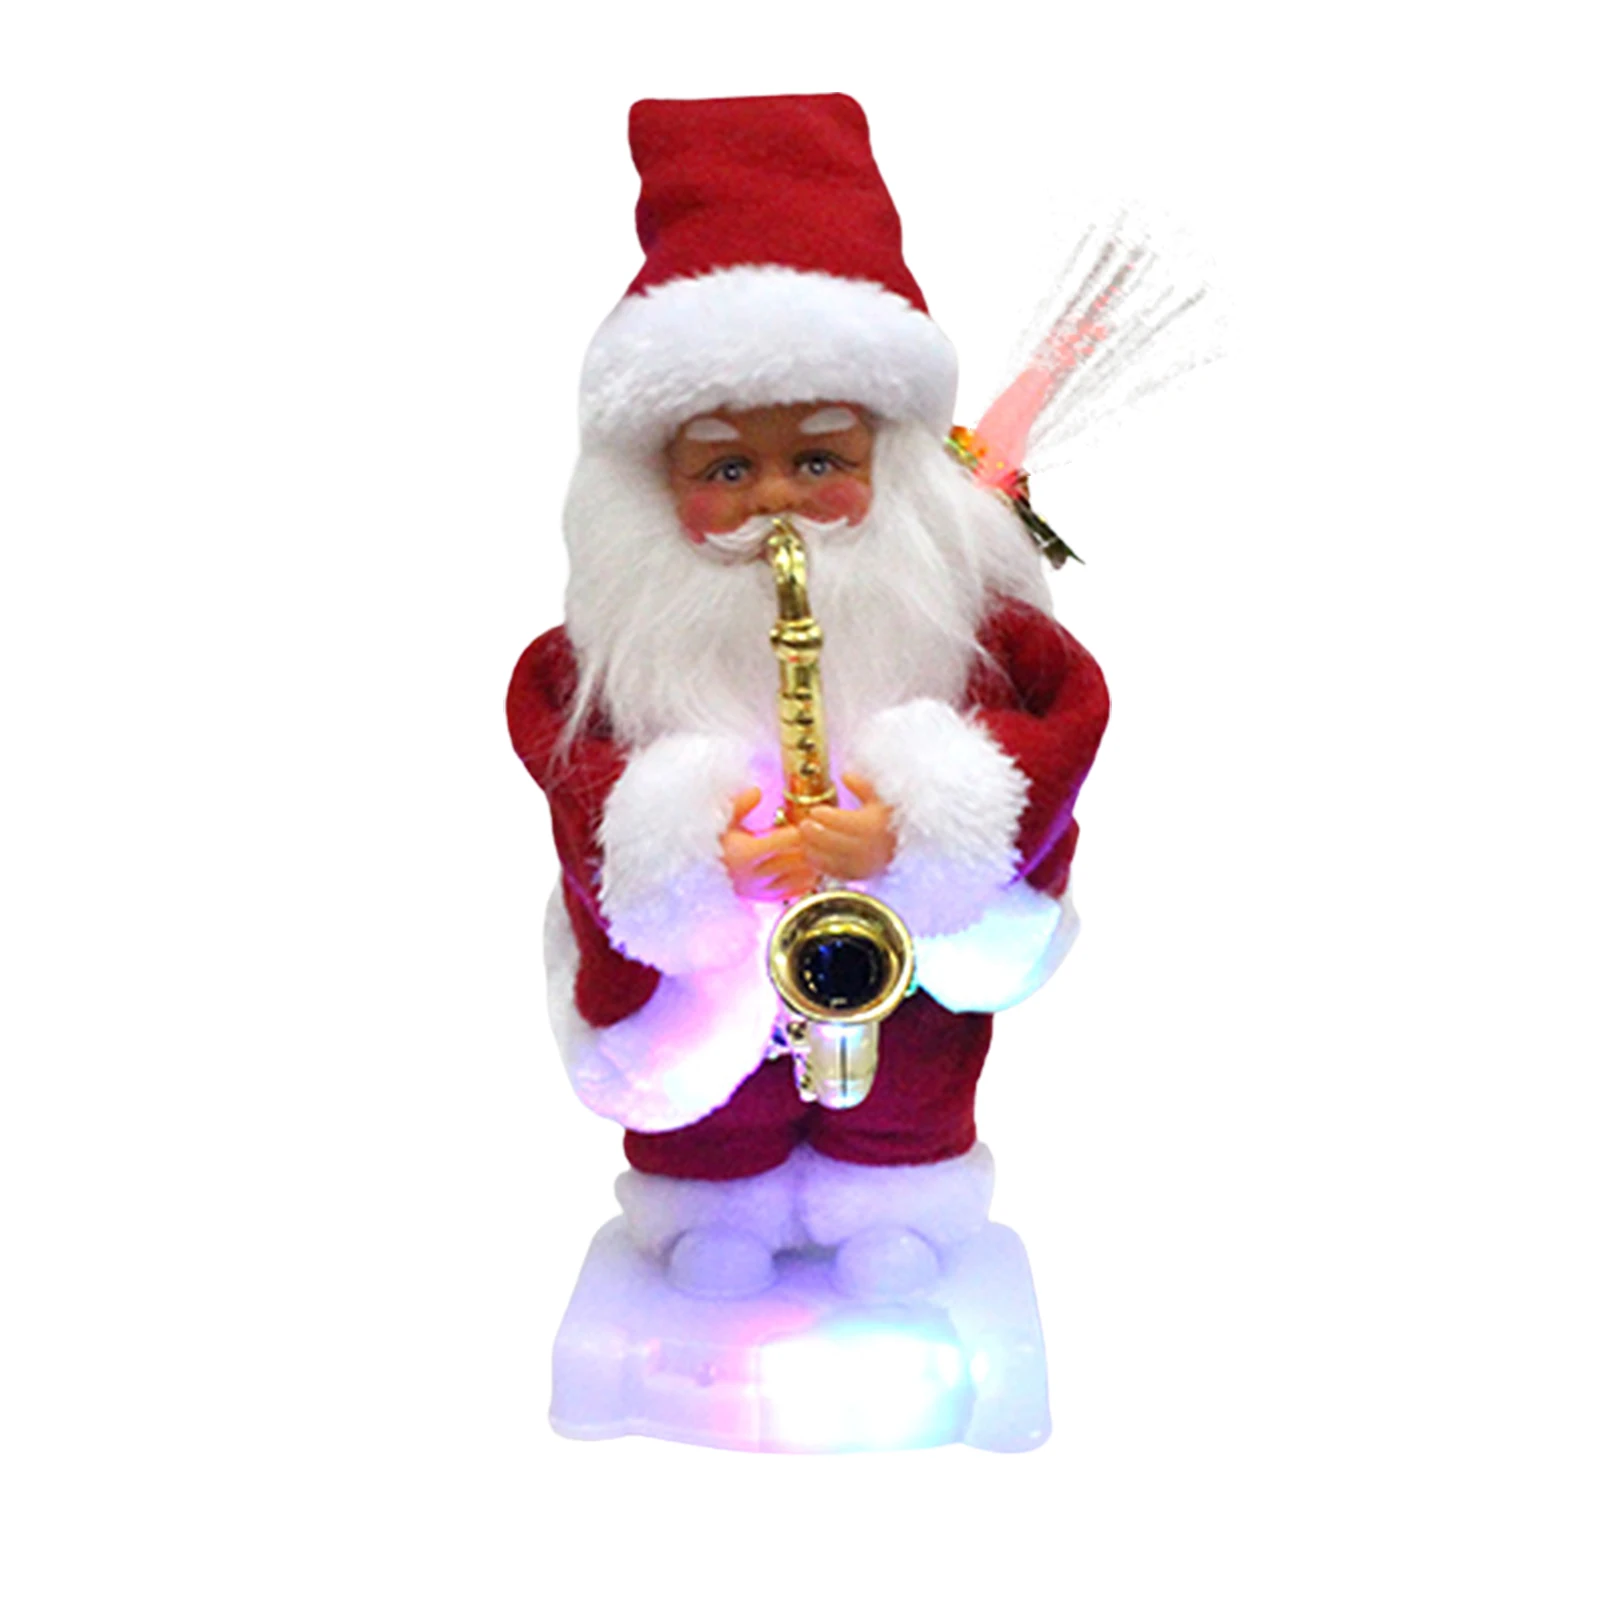 

Дед Мороз, Рождественское украшение, Рождественский Санта-Клаус, играющий на саксофоне, стоячий планер, маленький саксофон, кукла